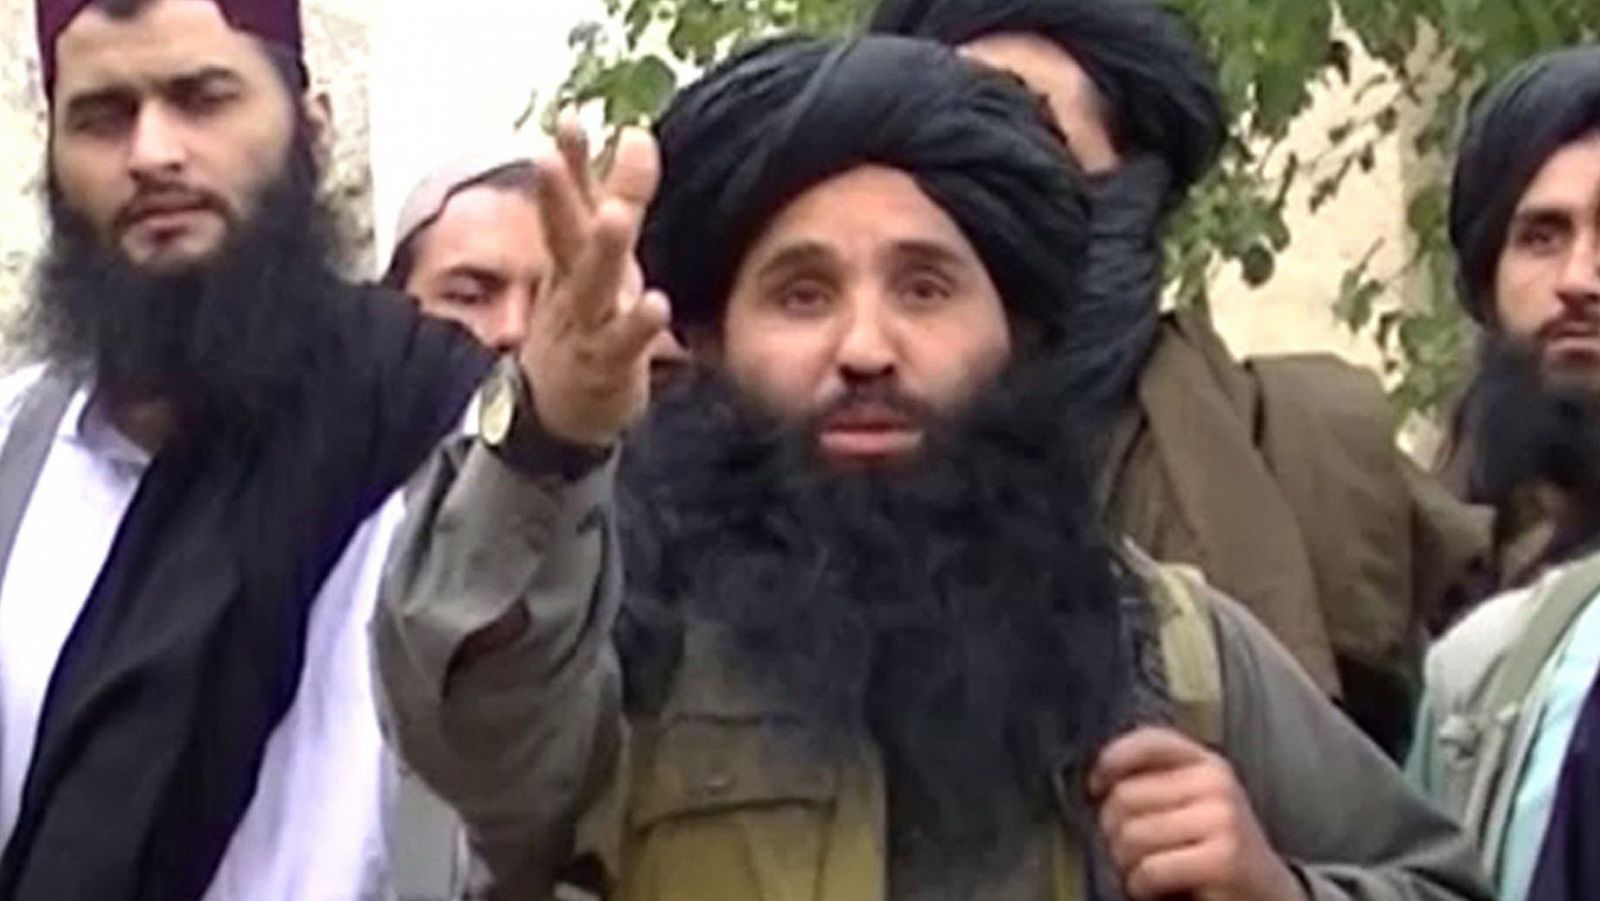 El jefe talibán paquistaní Mullah Fazlullah